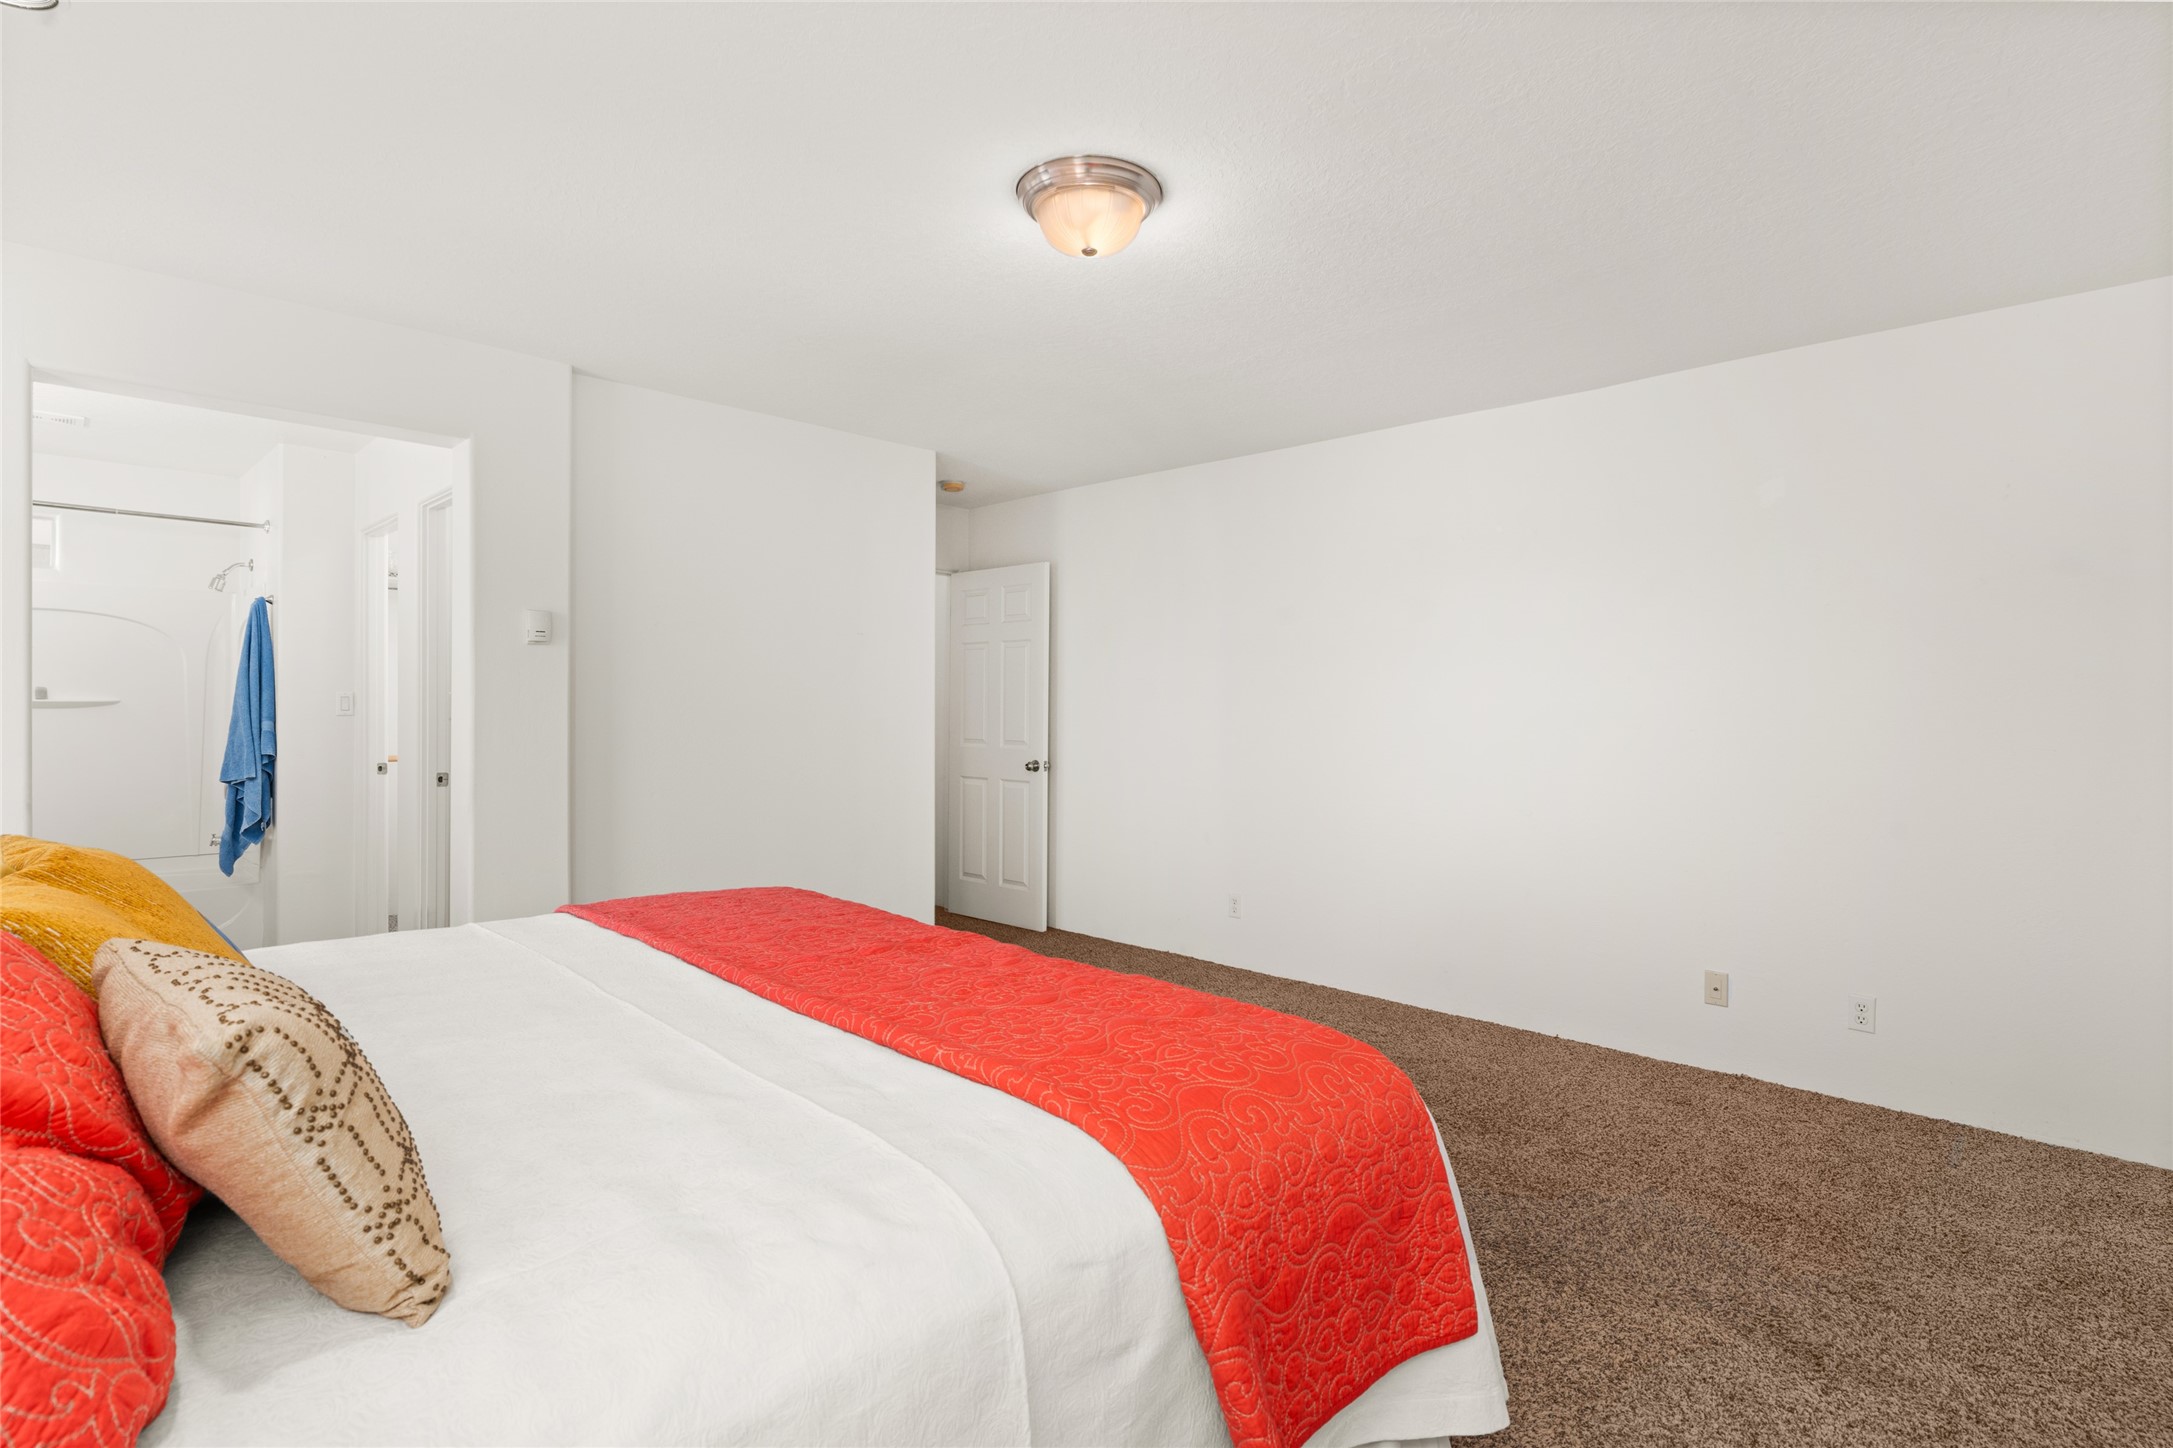 9 Victorio Peak, Santa Fe, New Mexico 87508, 3 Bedrooms Bedrooms, ,2 BathroomsBathrooms,Residential,For Sale,9 Victorio Peak,202341758